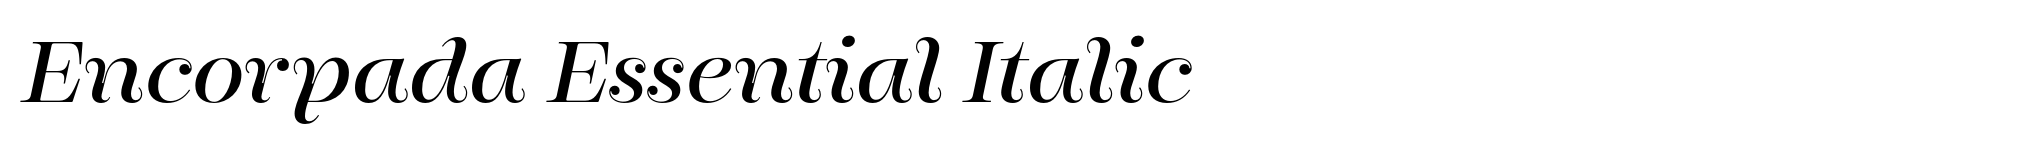 Encorpada Essential Italic image